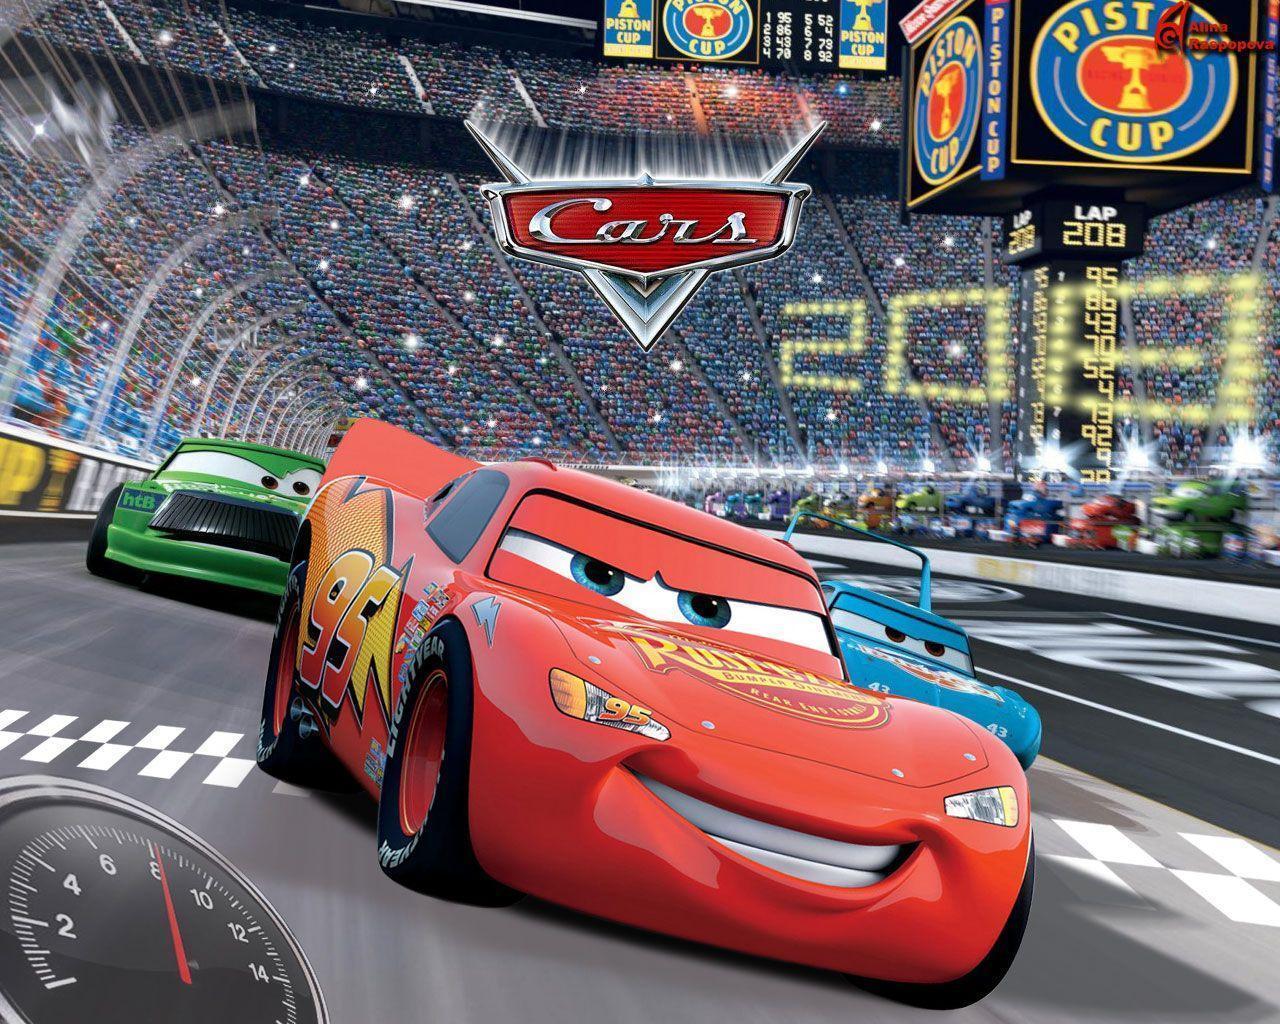 Disney Cars 2 HD Wallpaper for iPad mini 3